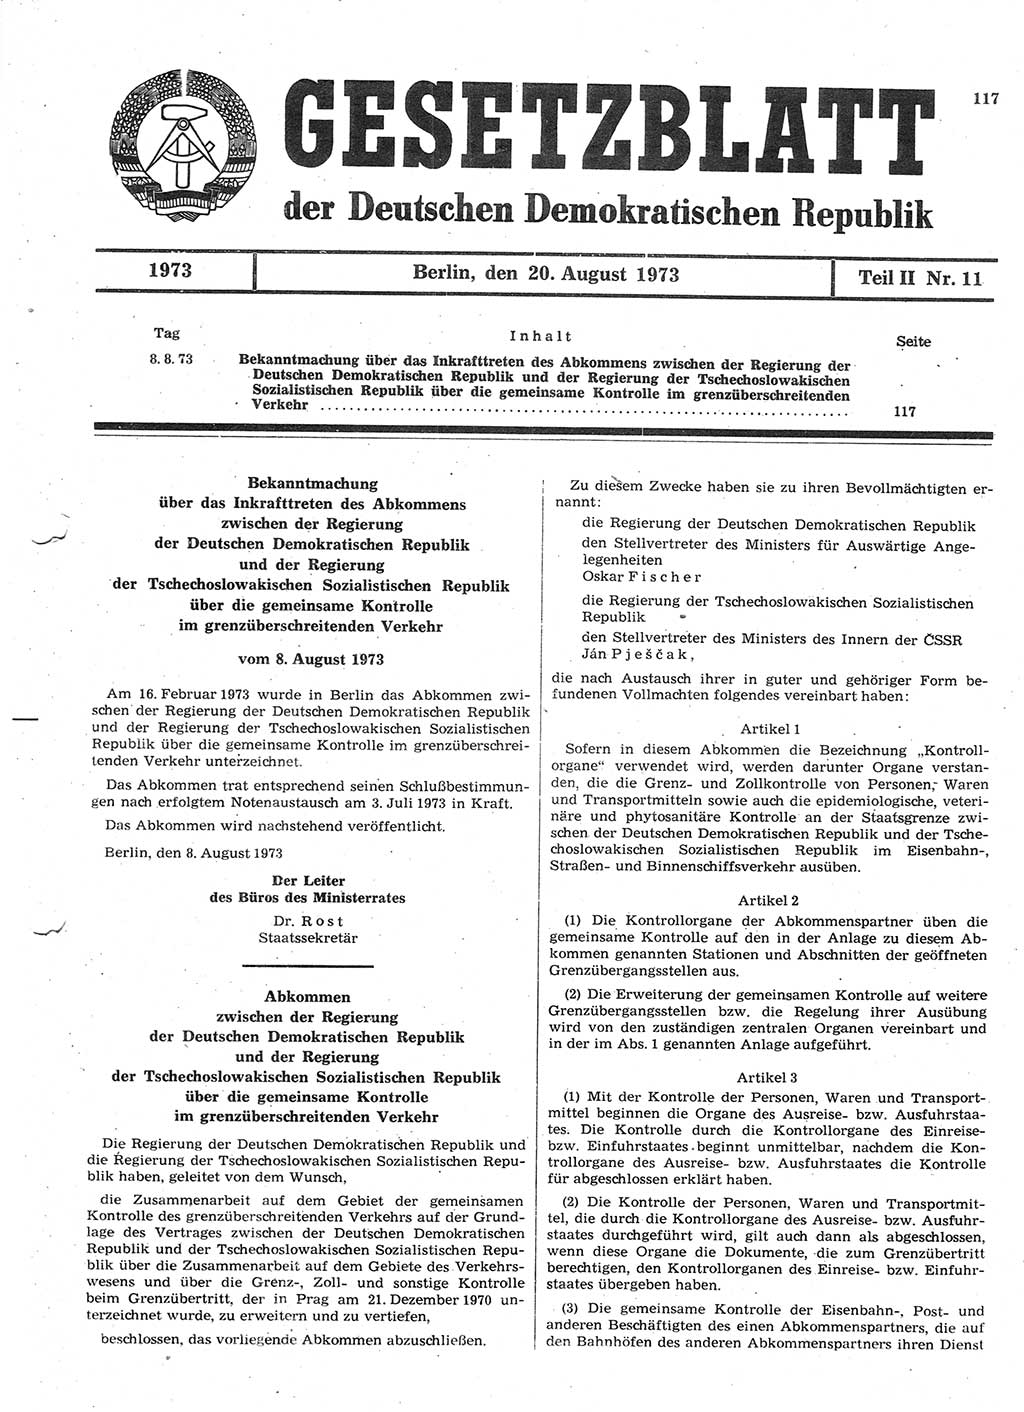 Gesetzblatt (GBl.) der Deutschen Demokratischen Republik (DDR) Teil ⅠⅠ 1973, Seite 117 (GBl. DDR ⅠⅠ 1973, S. 117)